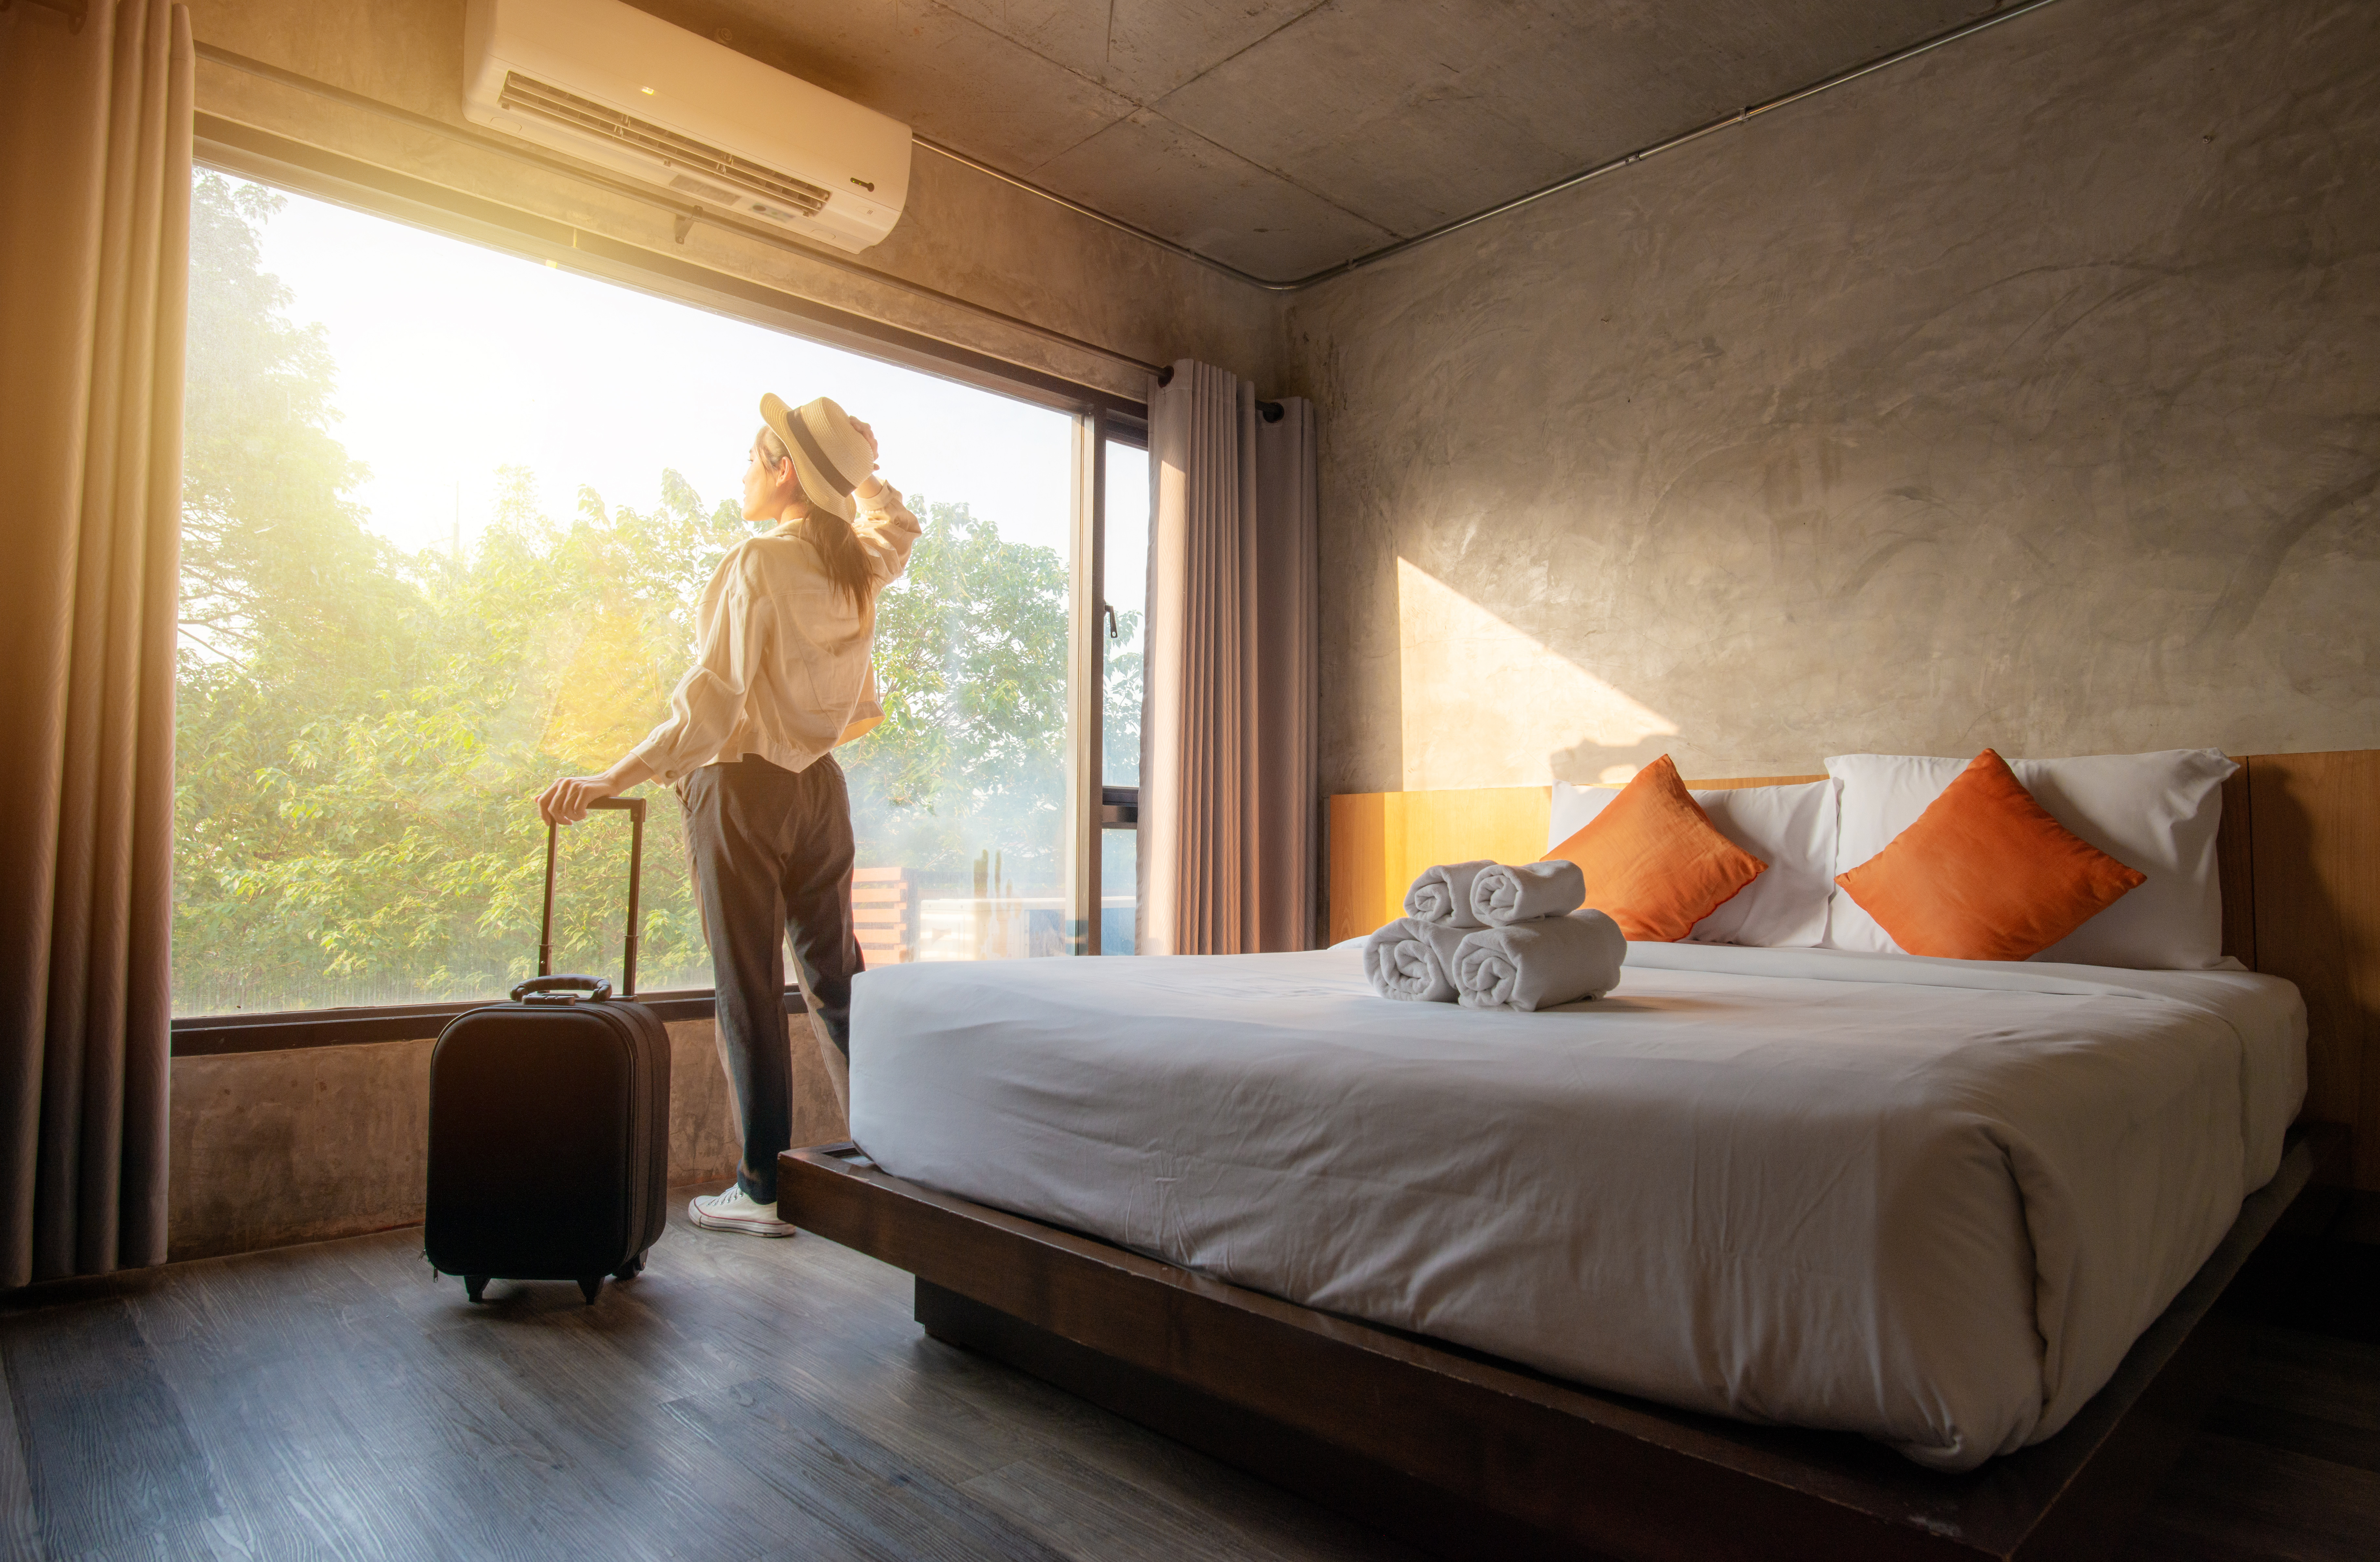 Une touriste profite de la vue à l'extérieur de sa chambre d'hôtel après l'enregistrement | Source : Shutterstock